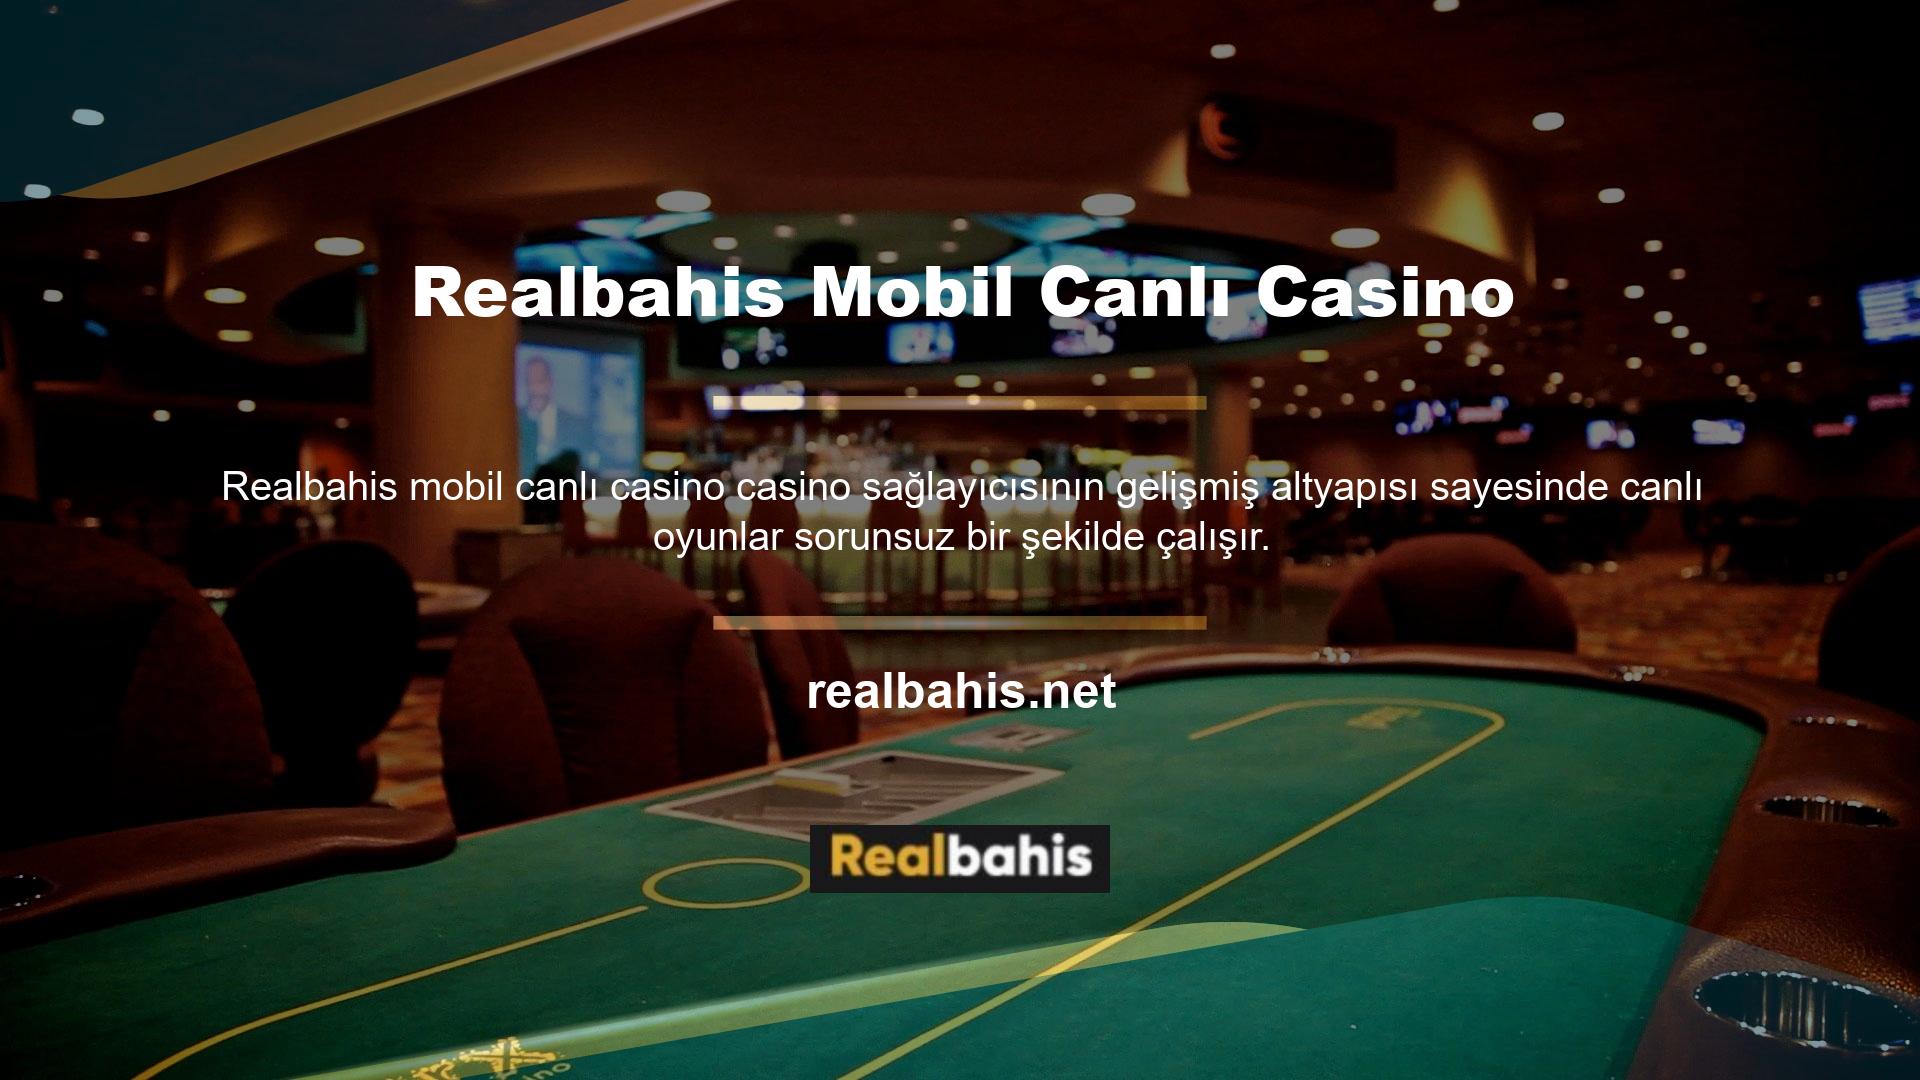 Sitenin mobil menüsünde canlı casino ismine tıkladığınızda giriş yapmanız istenecektir